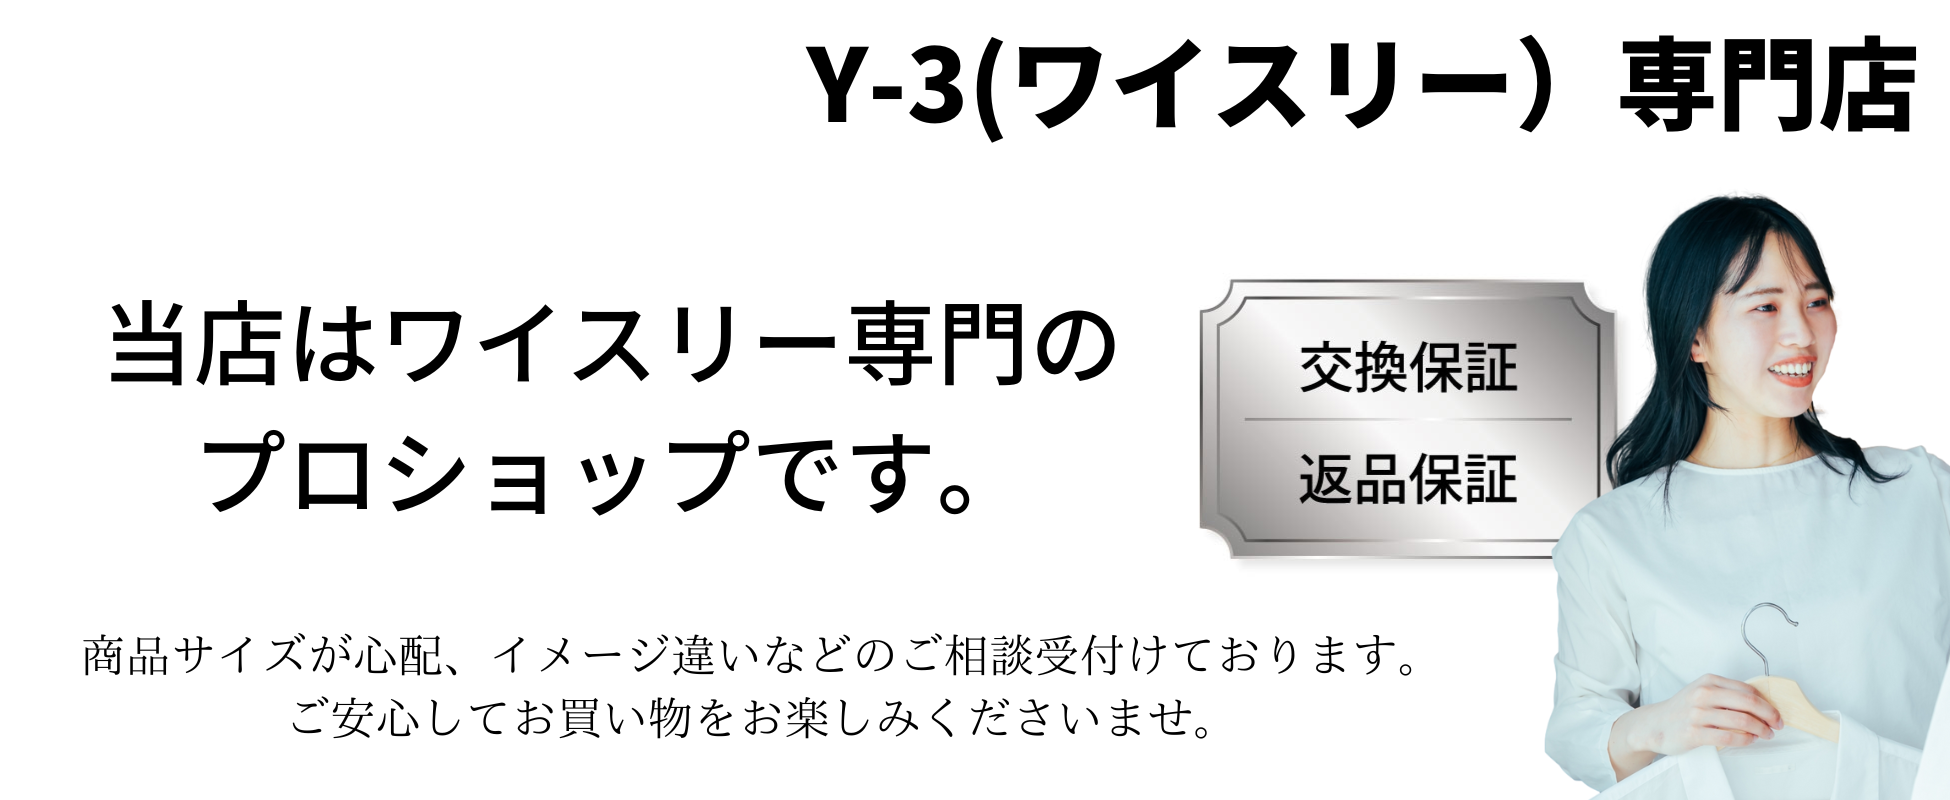 【入手困難】Y-3☆ ワンポイント スリーストライプパーカー 即完売モデル 美品